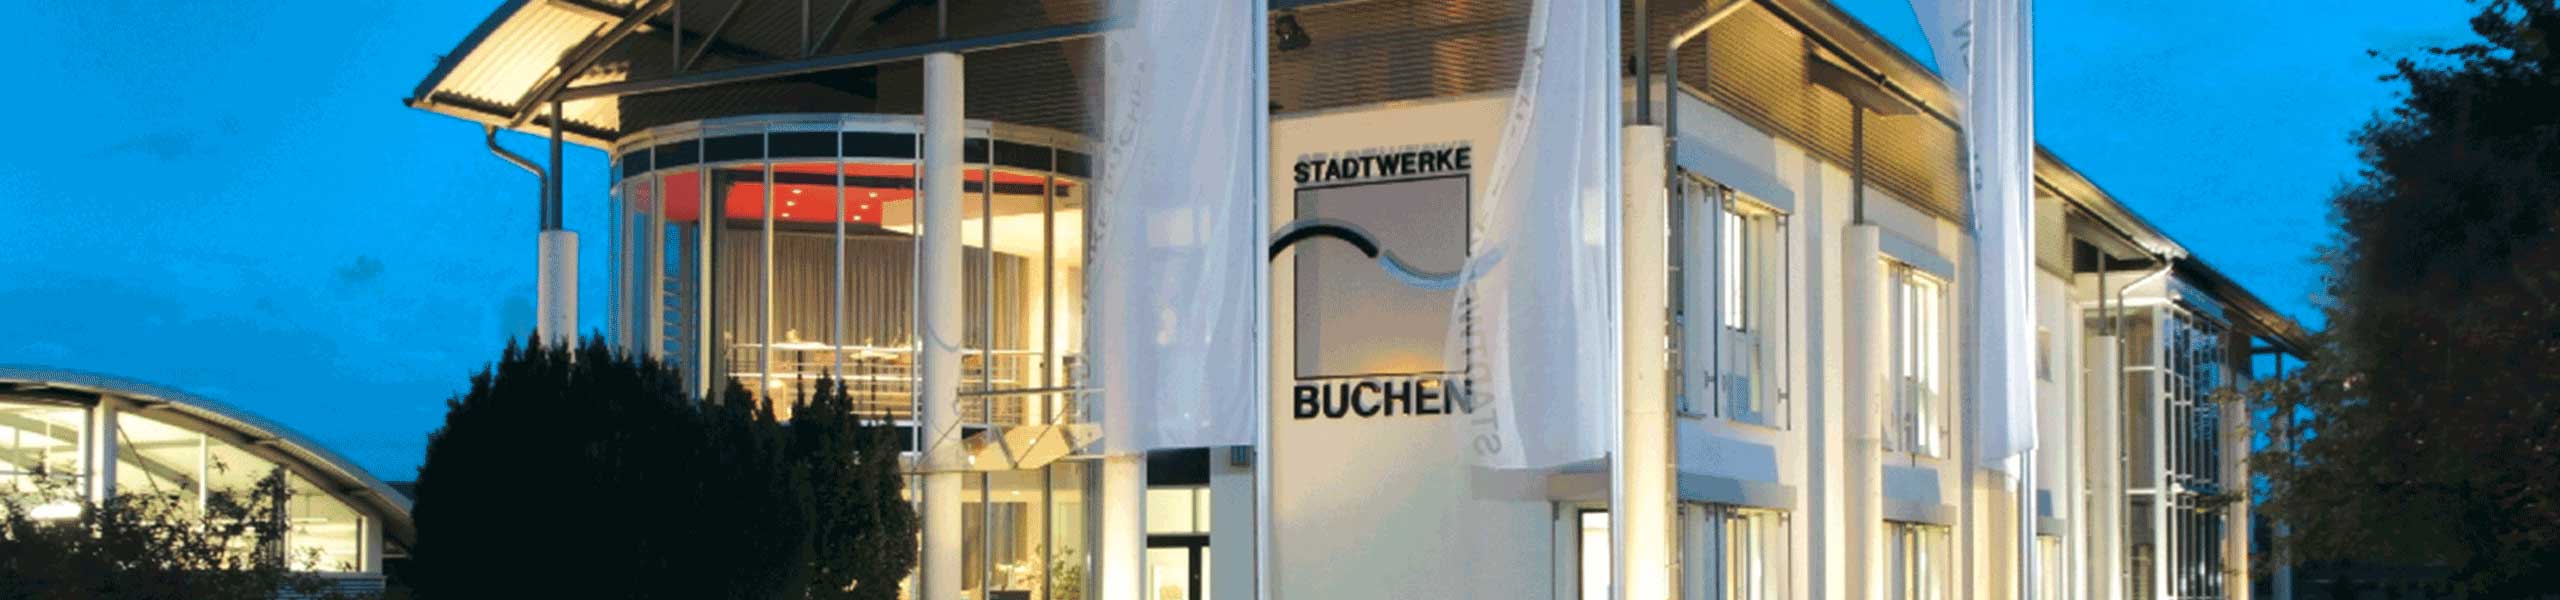 Stadtwerke Buchen GmbH & Co KG - Netzanschluss